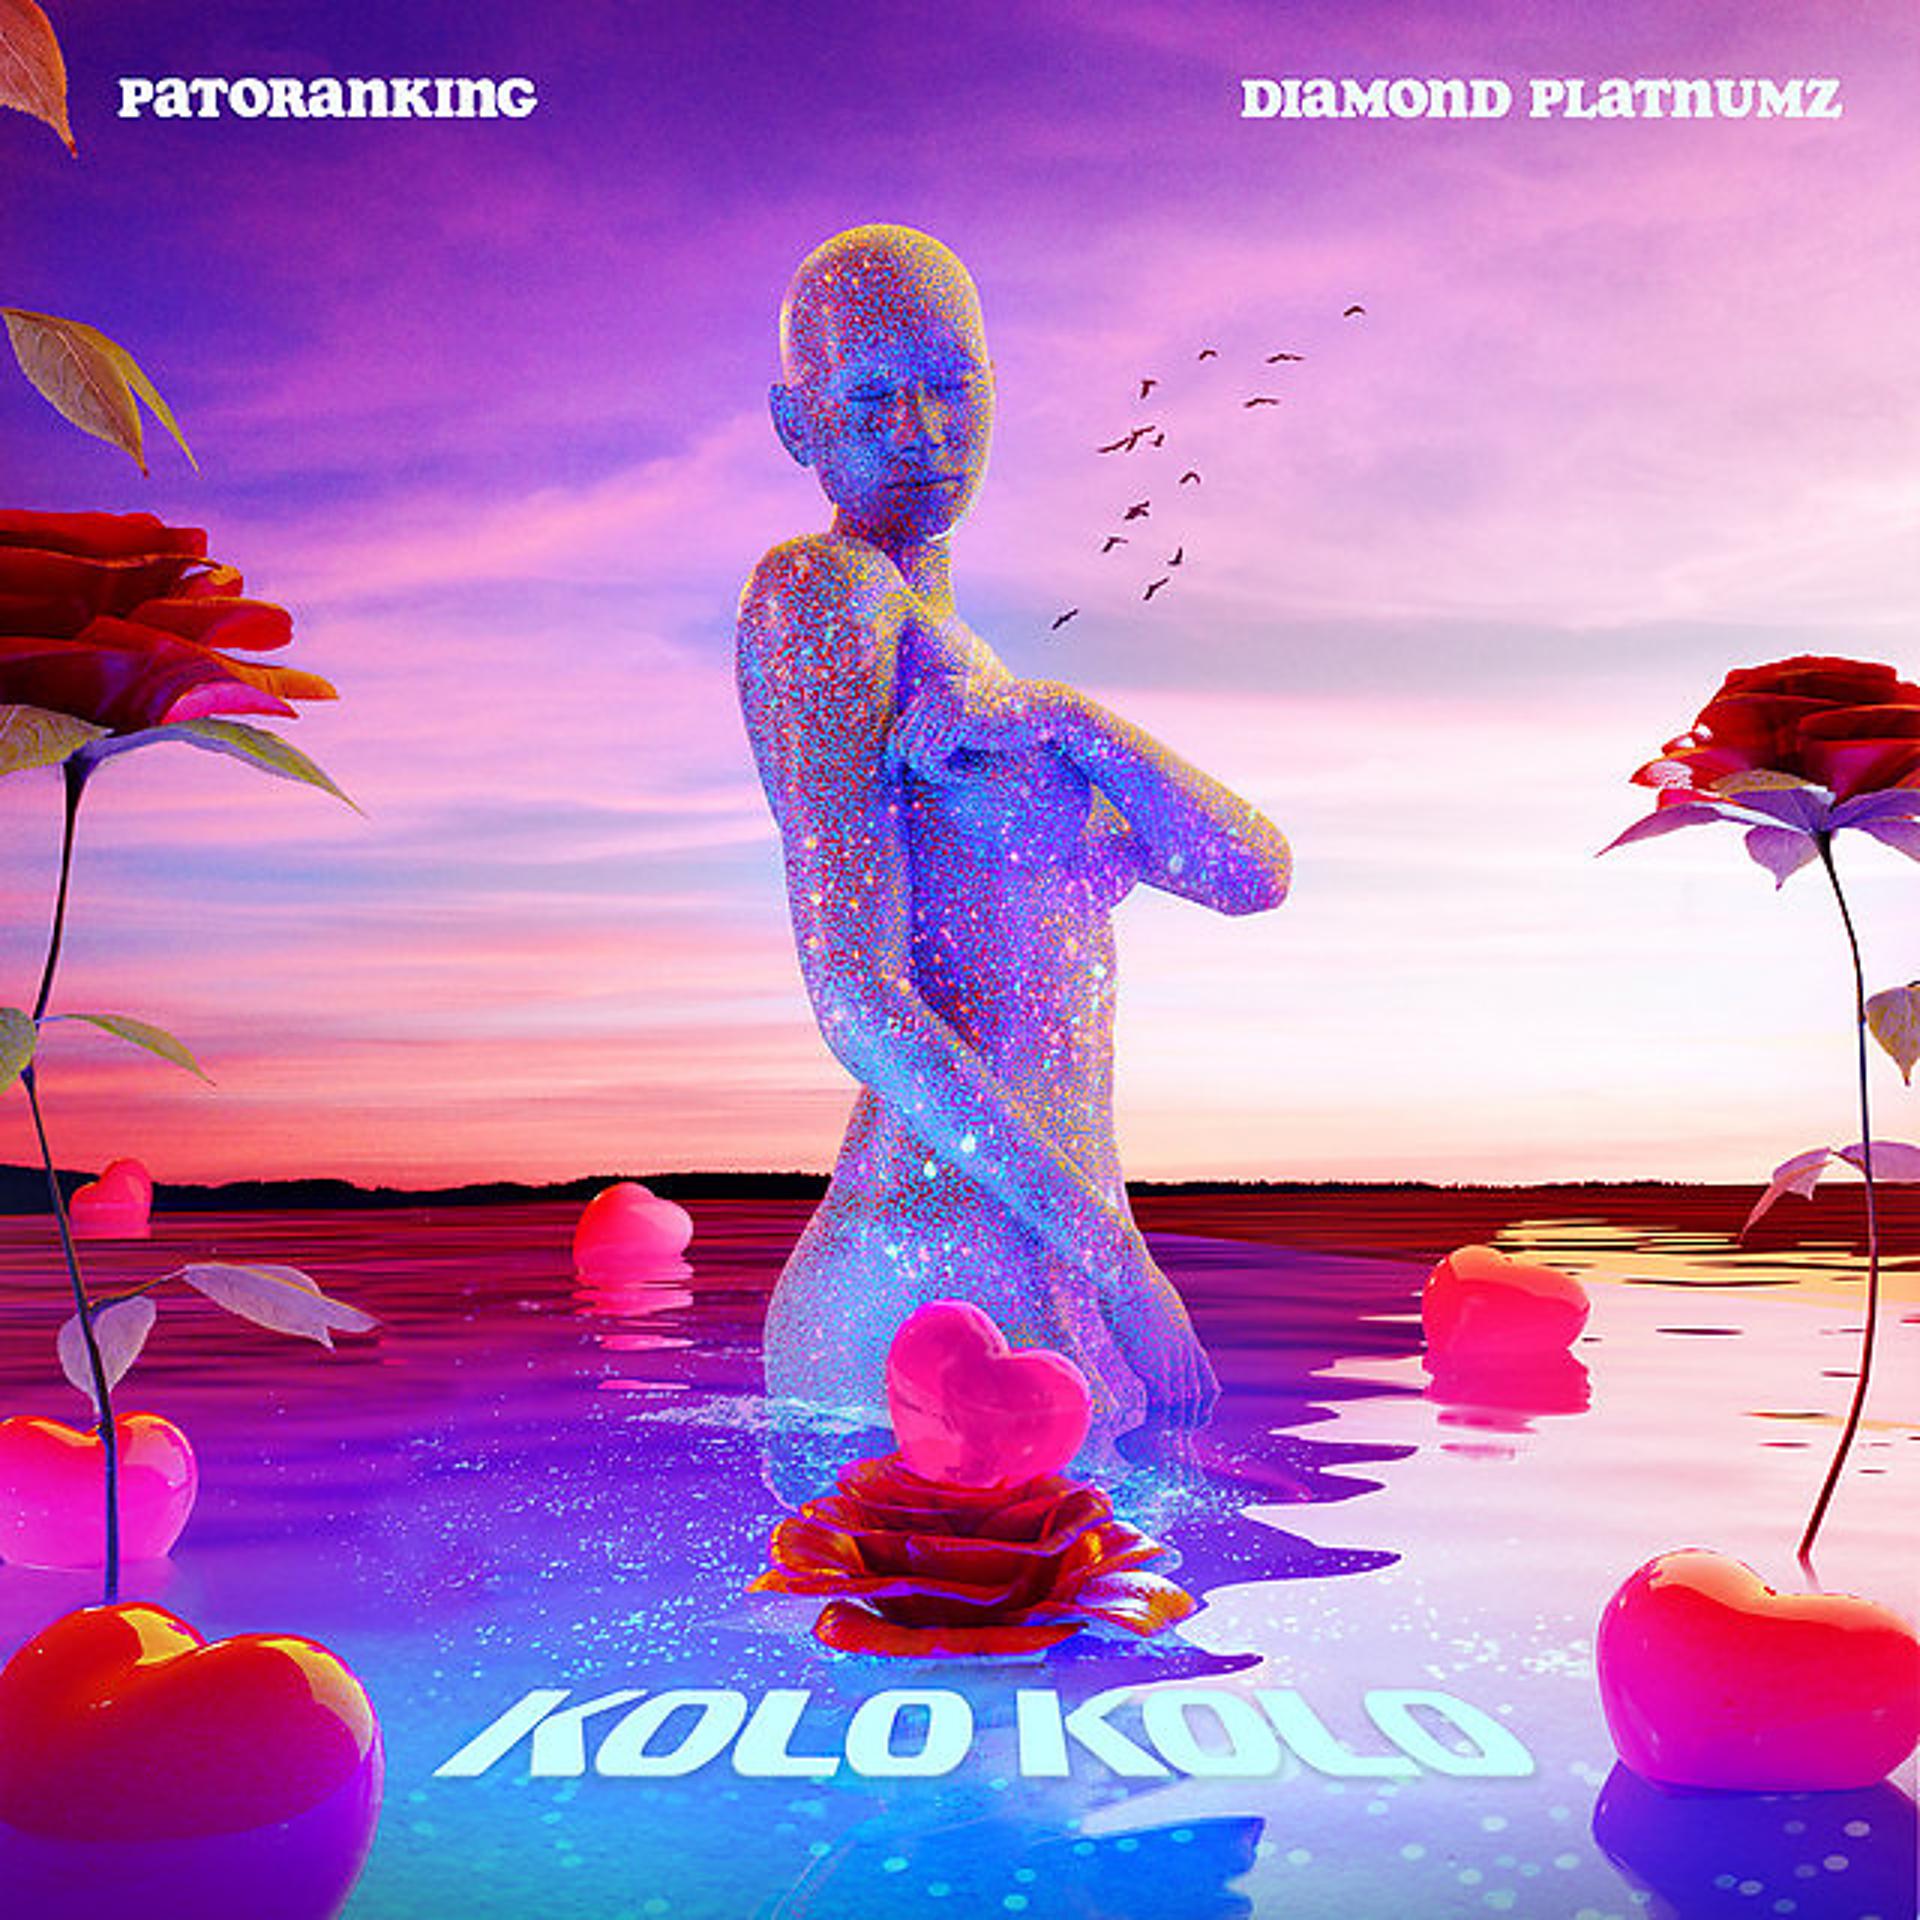 Patoranking kolo kolo [feat. Diamond Platnumz] Official Music Video. Masterkraft feat. Diamond Platnumz & Flavour - abeykehh.